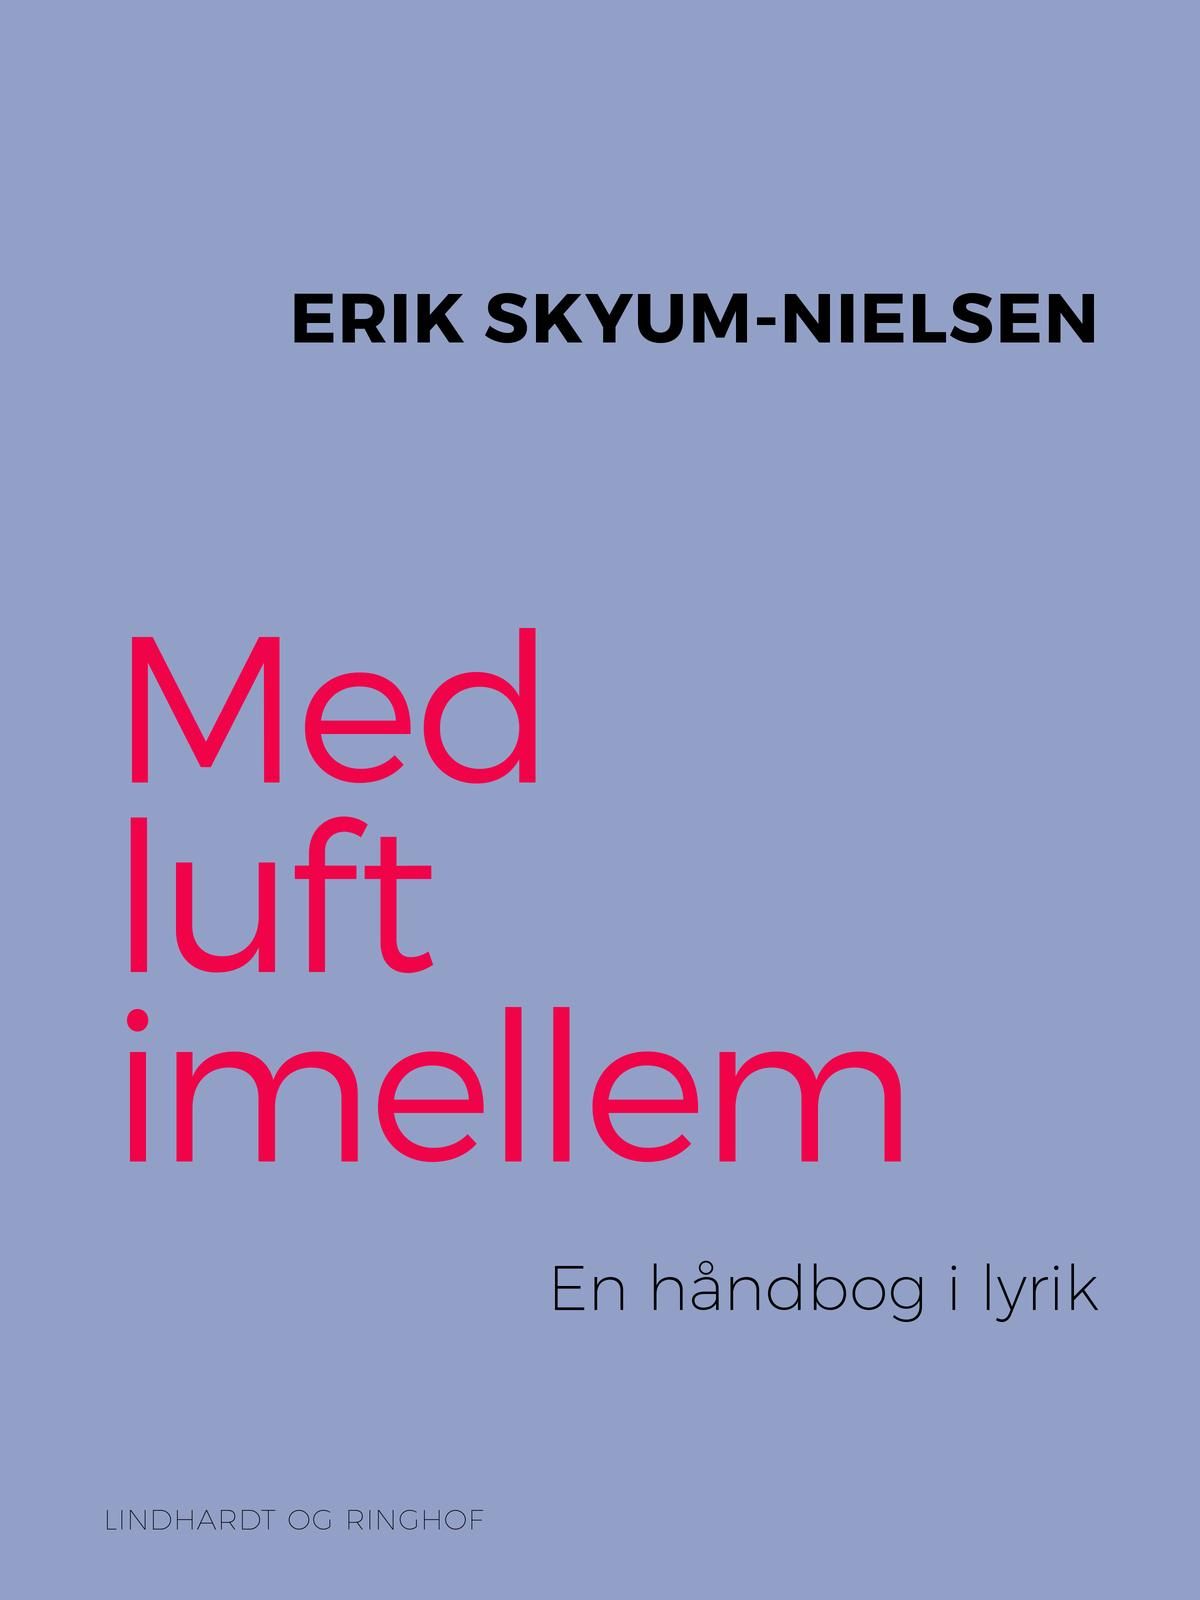 Med luft imellem. En håndbog i lyrik, e-bok av Erik Skyum Nielsen